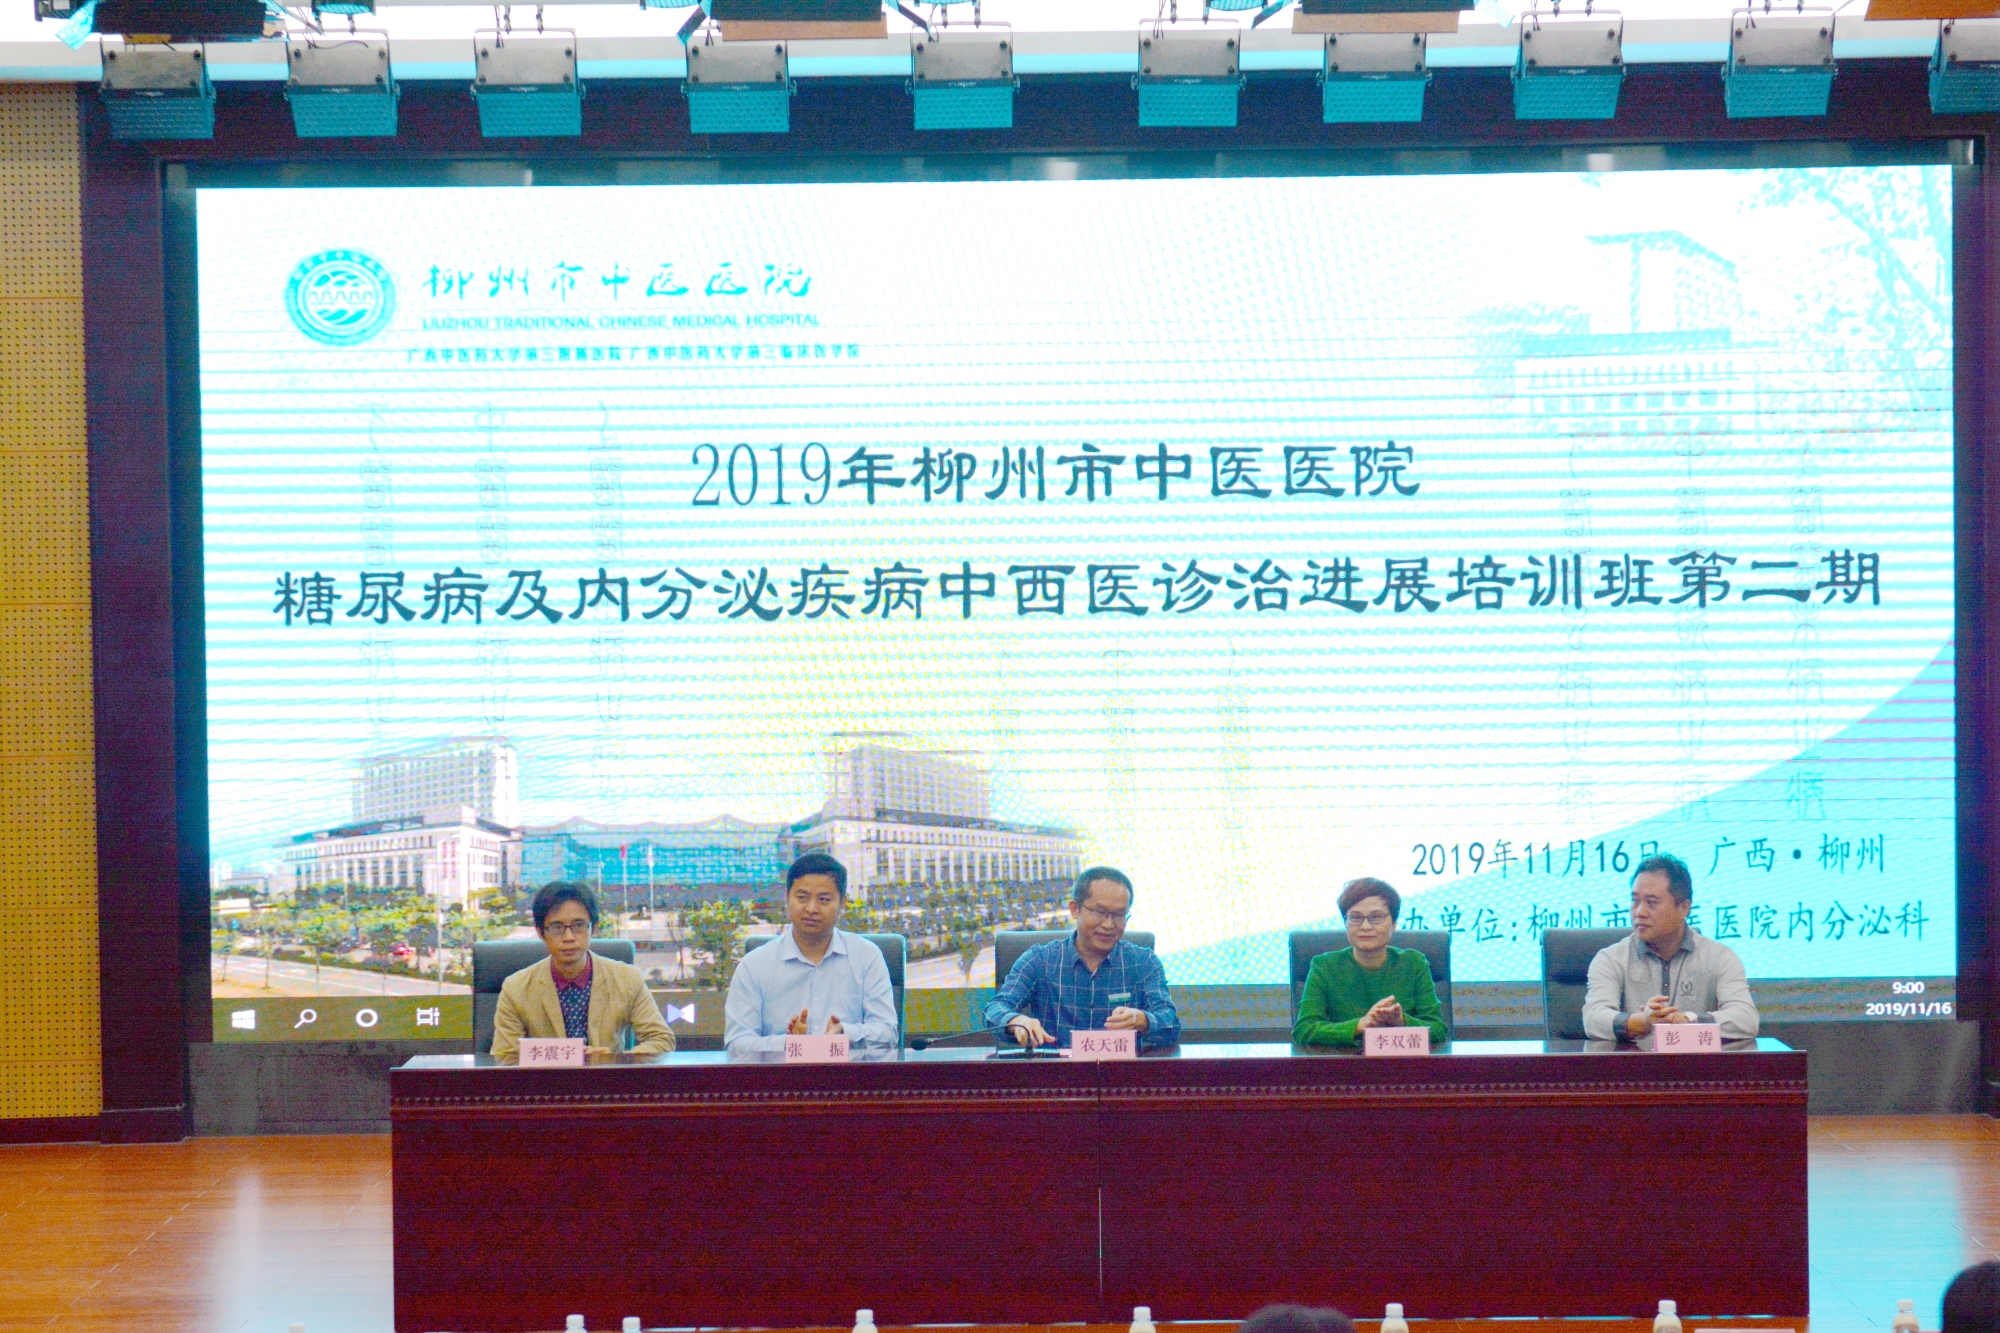 李双蕾教授受邀至柳州市中医院进行学术讲座